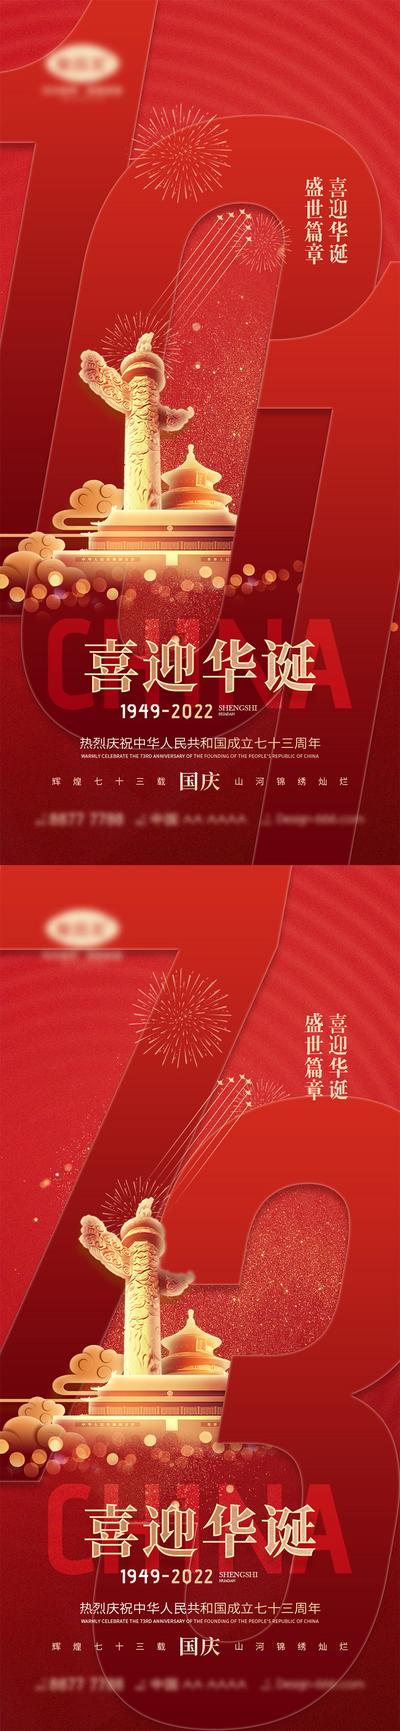 南门网 广告 海报 公立节日 国庆节 十一 盛世华诞 举国同庆 天安门 中国红 73周年